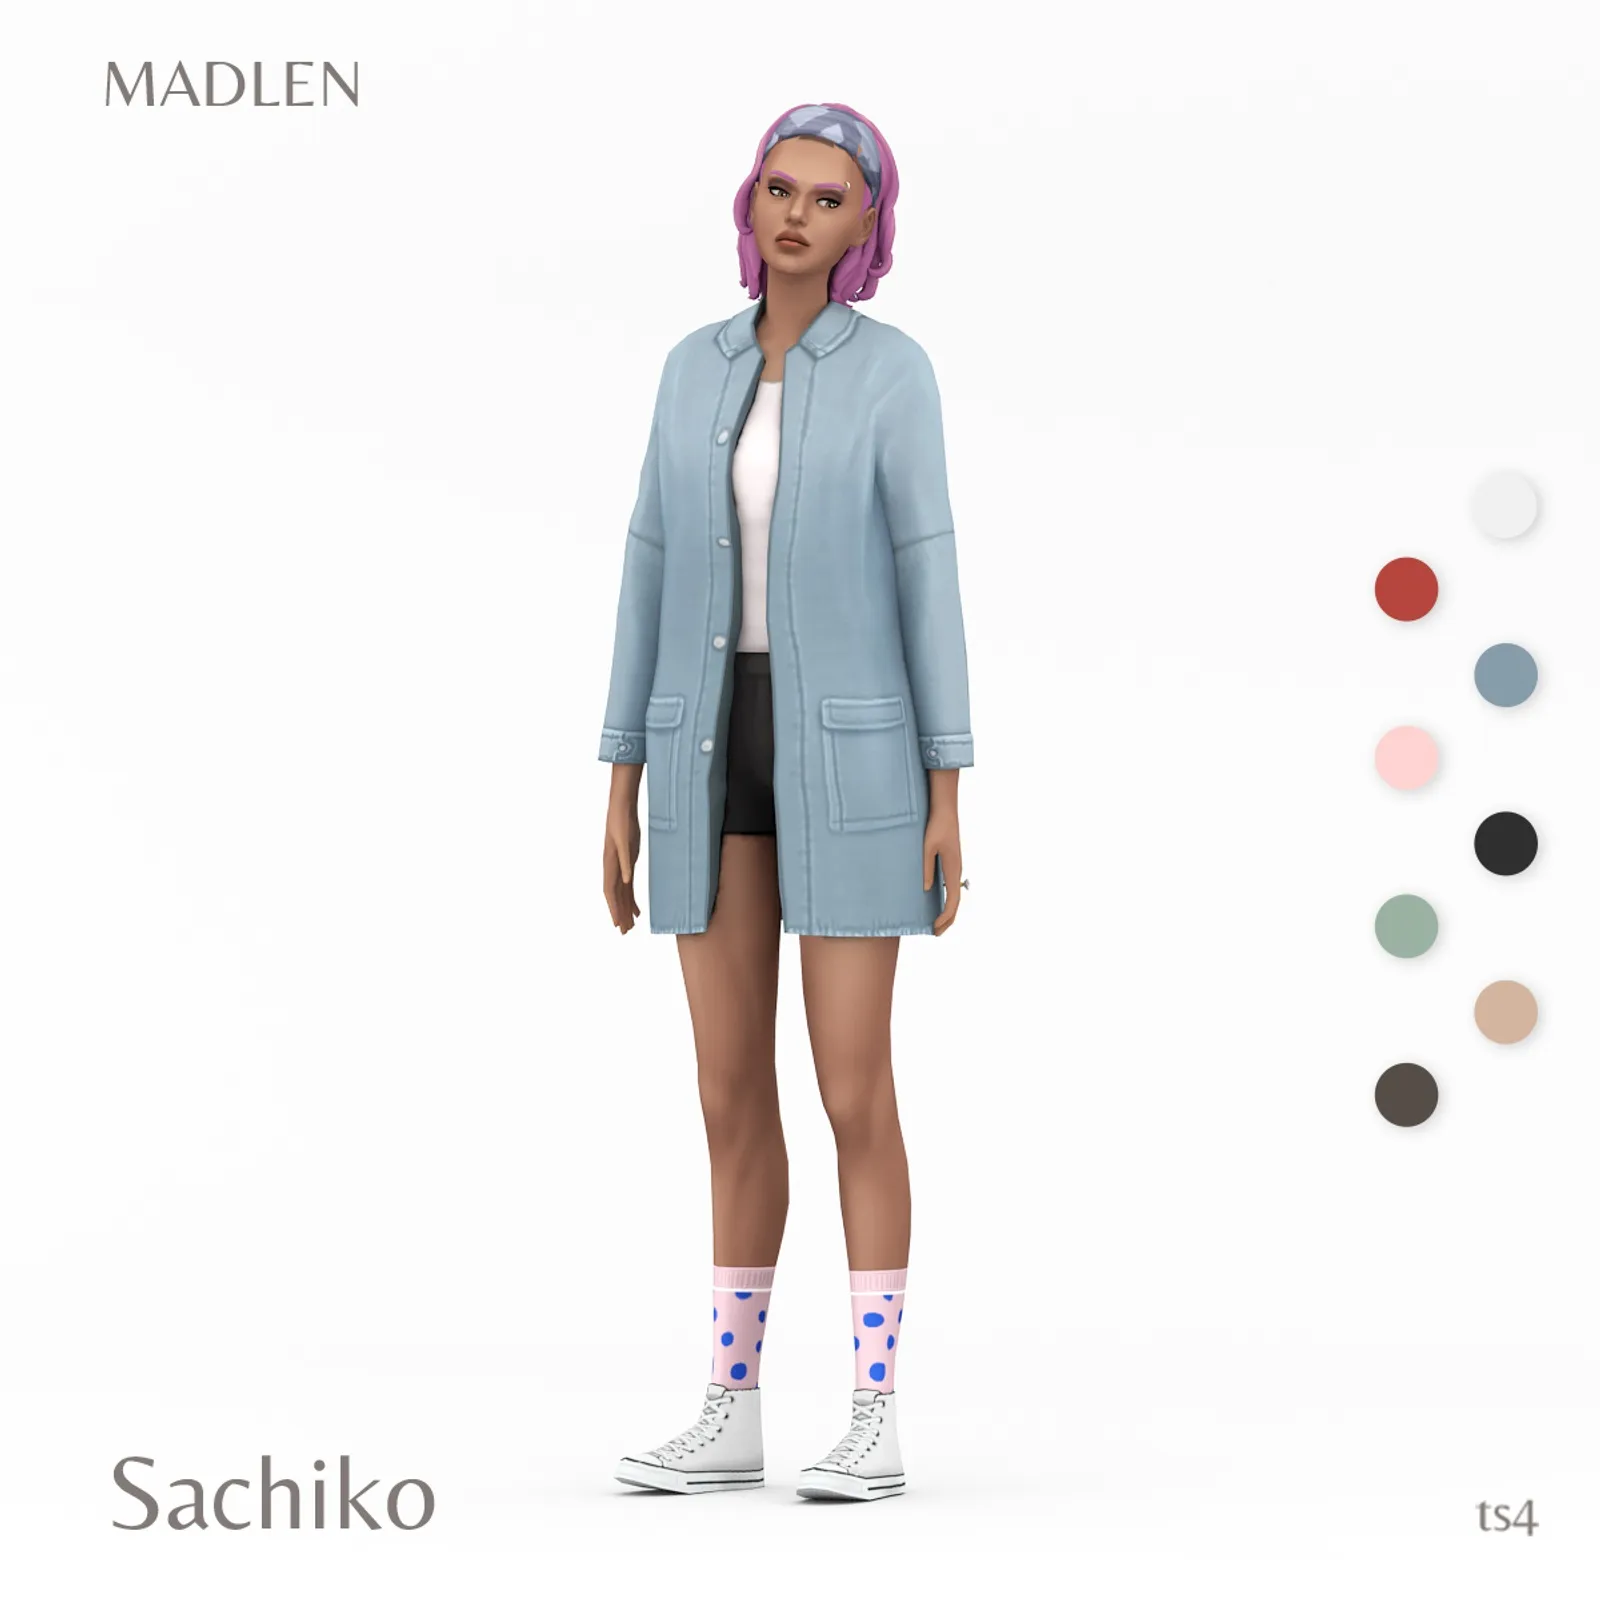 Sachiko Outfit